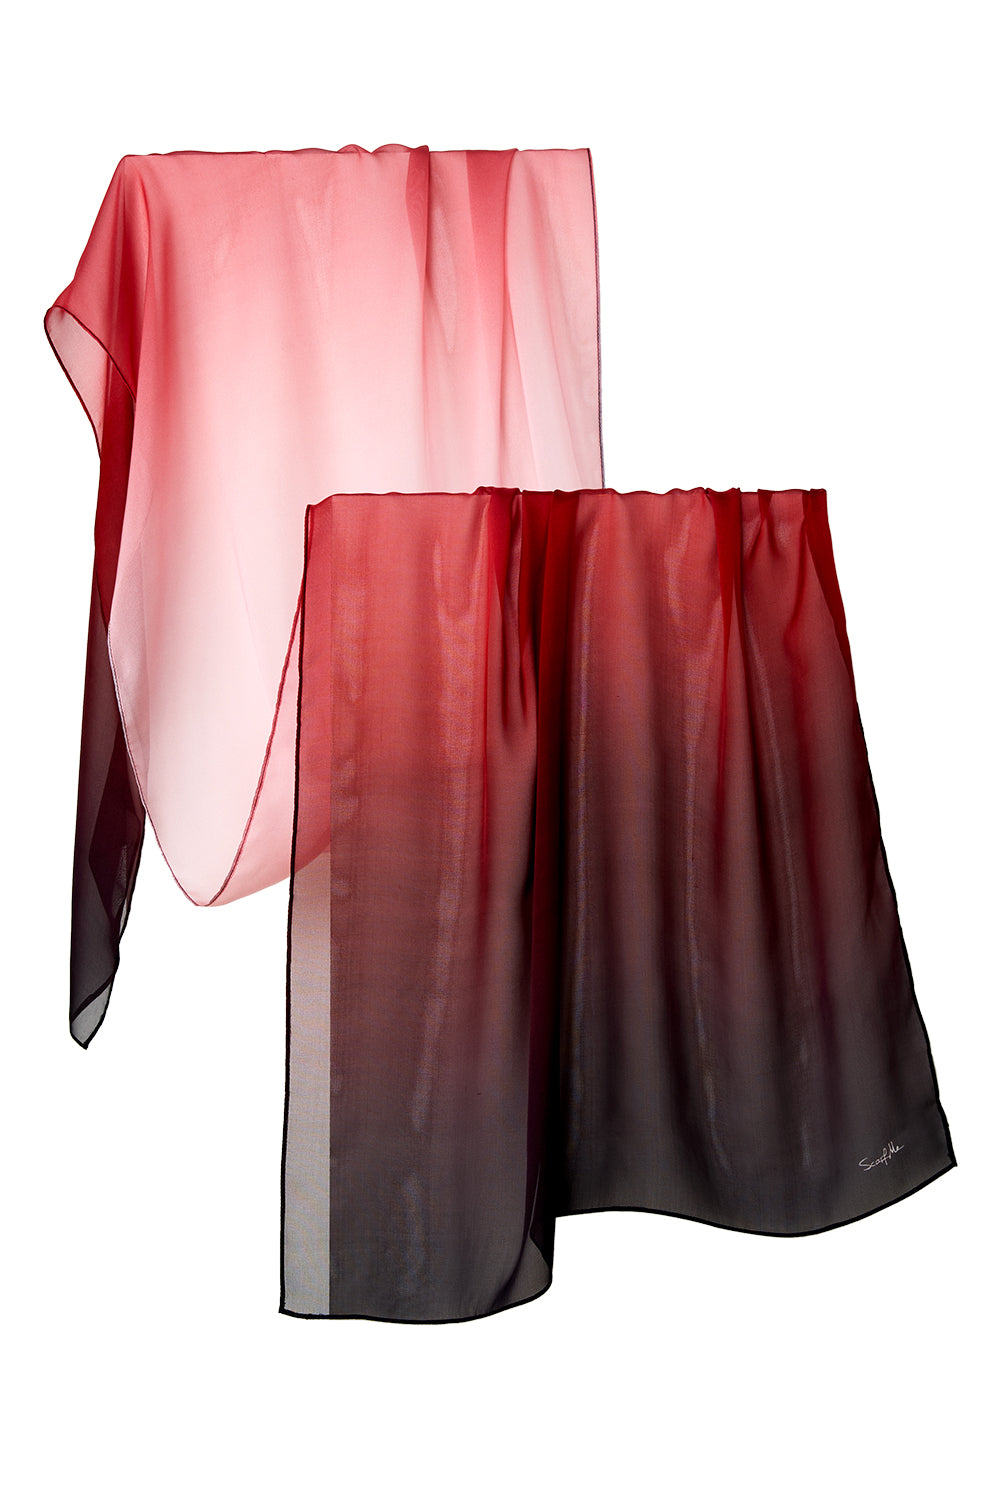 Echarpe Degradê vermelho em mousseline de seda | 60x210cm